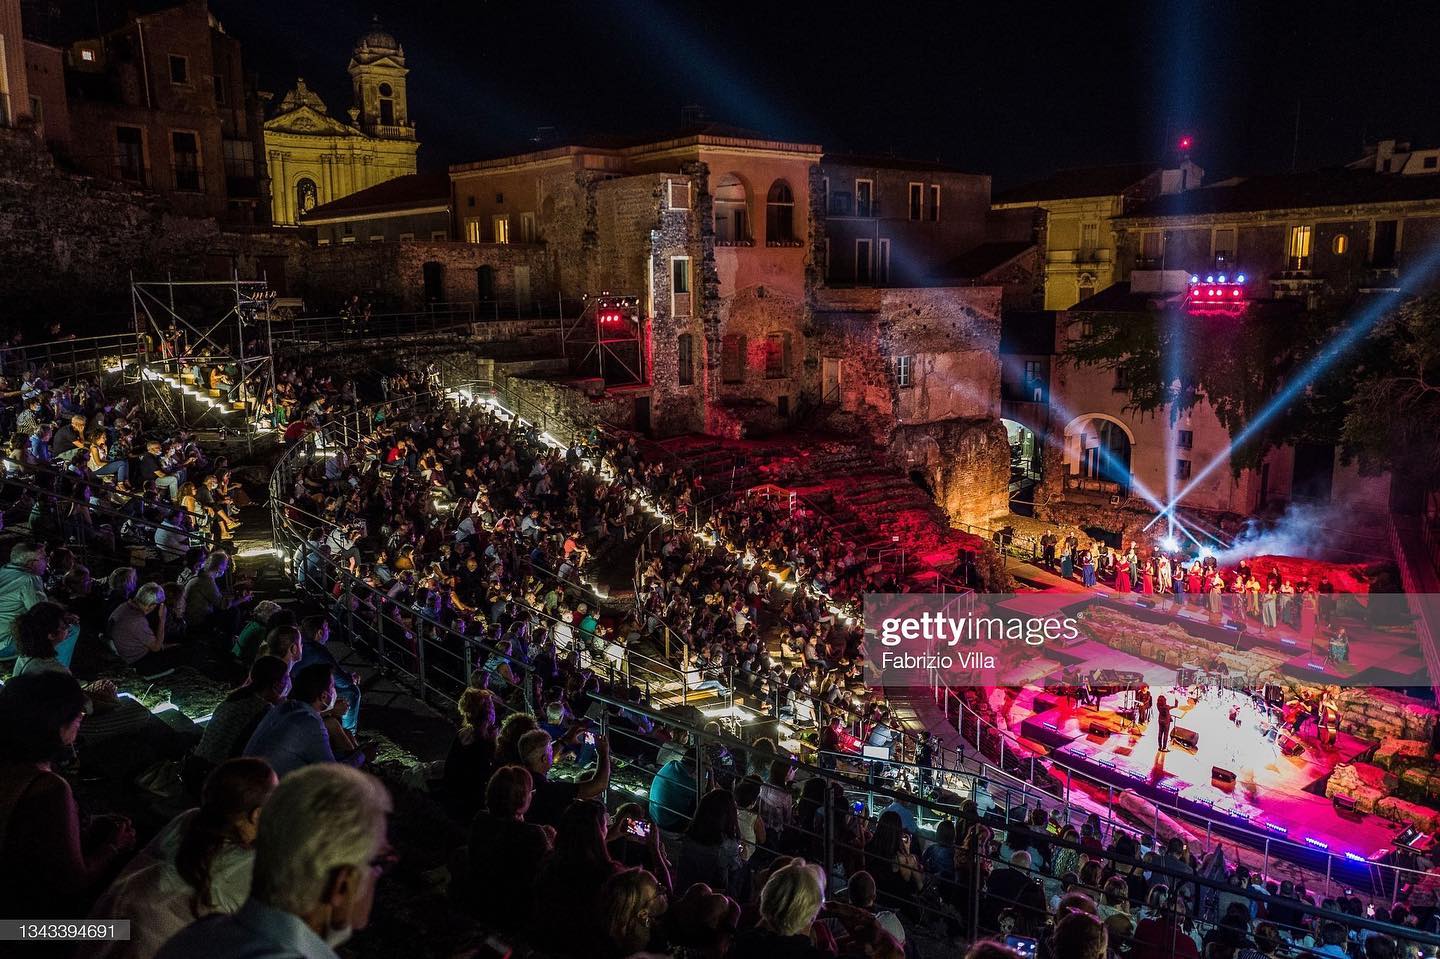 Festival Lirico dei Teatri di Pietra – Dal Rock a verdi la leggenda corre verso l’eternità